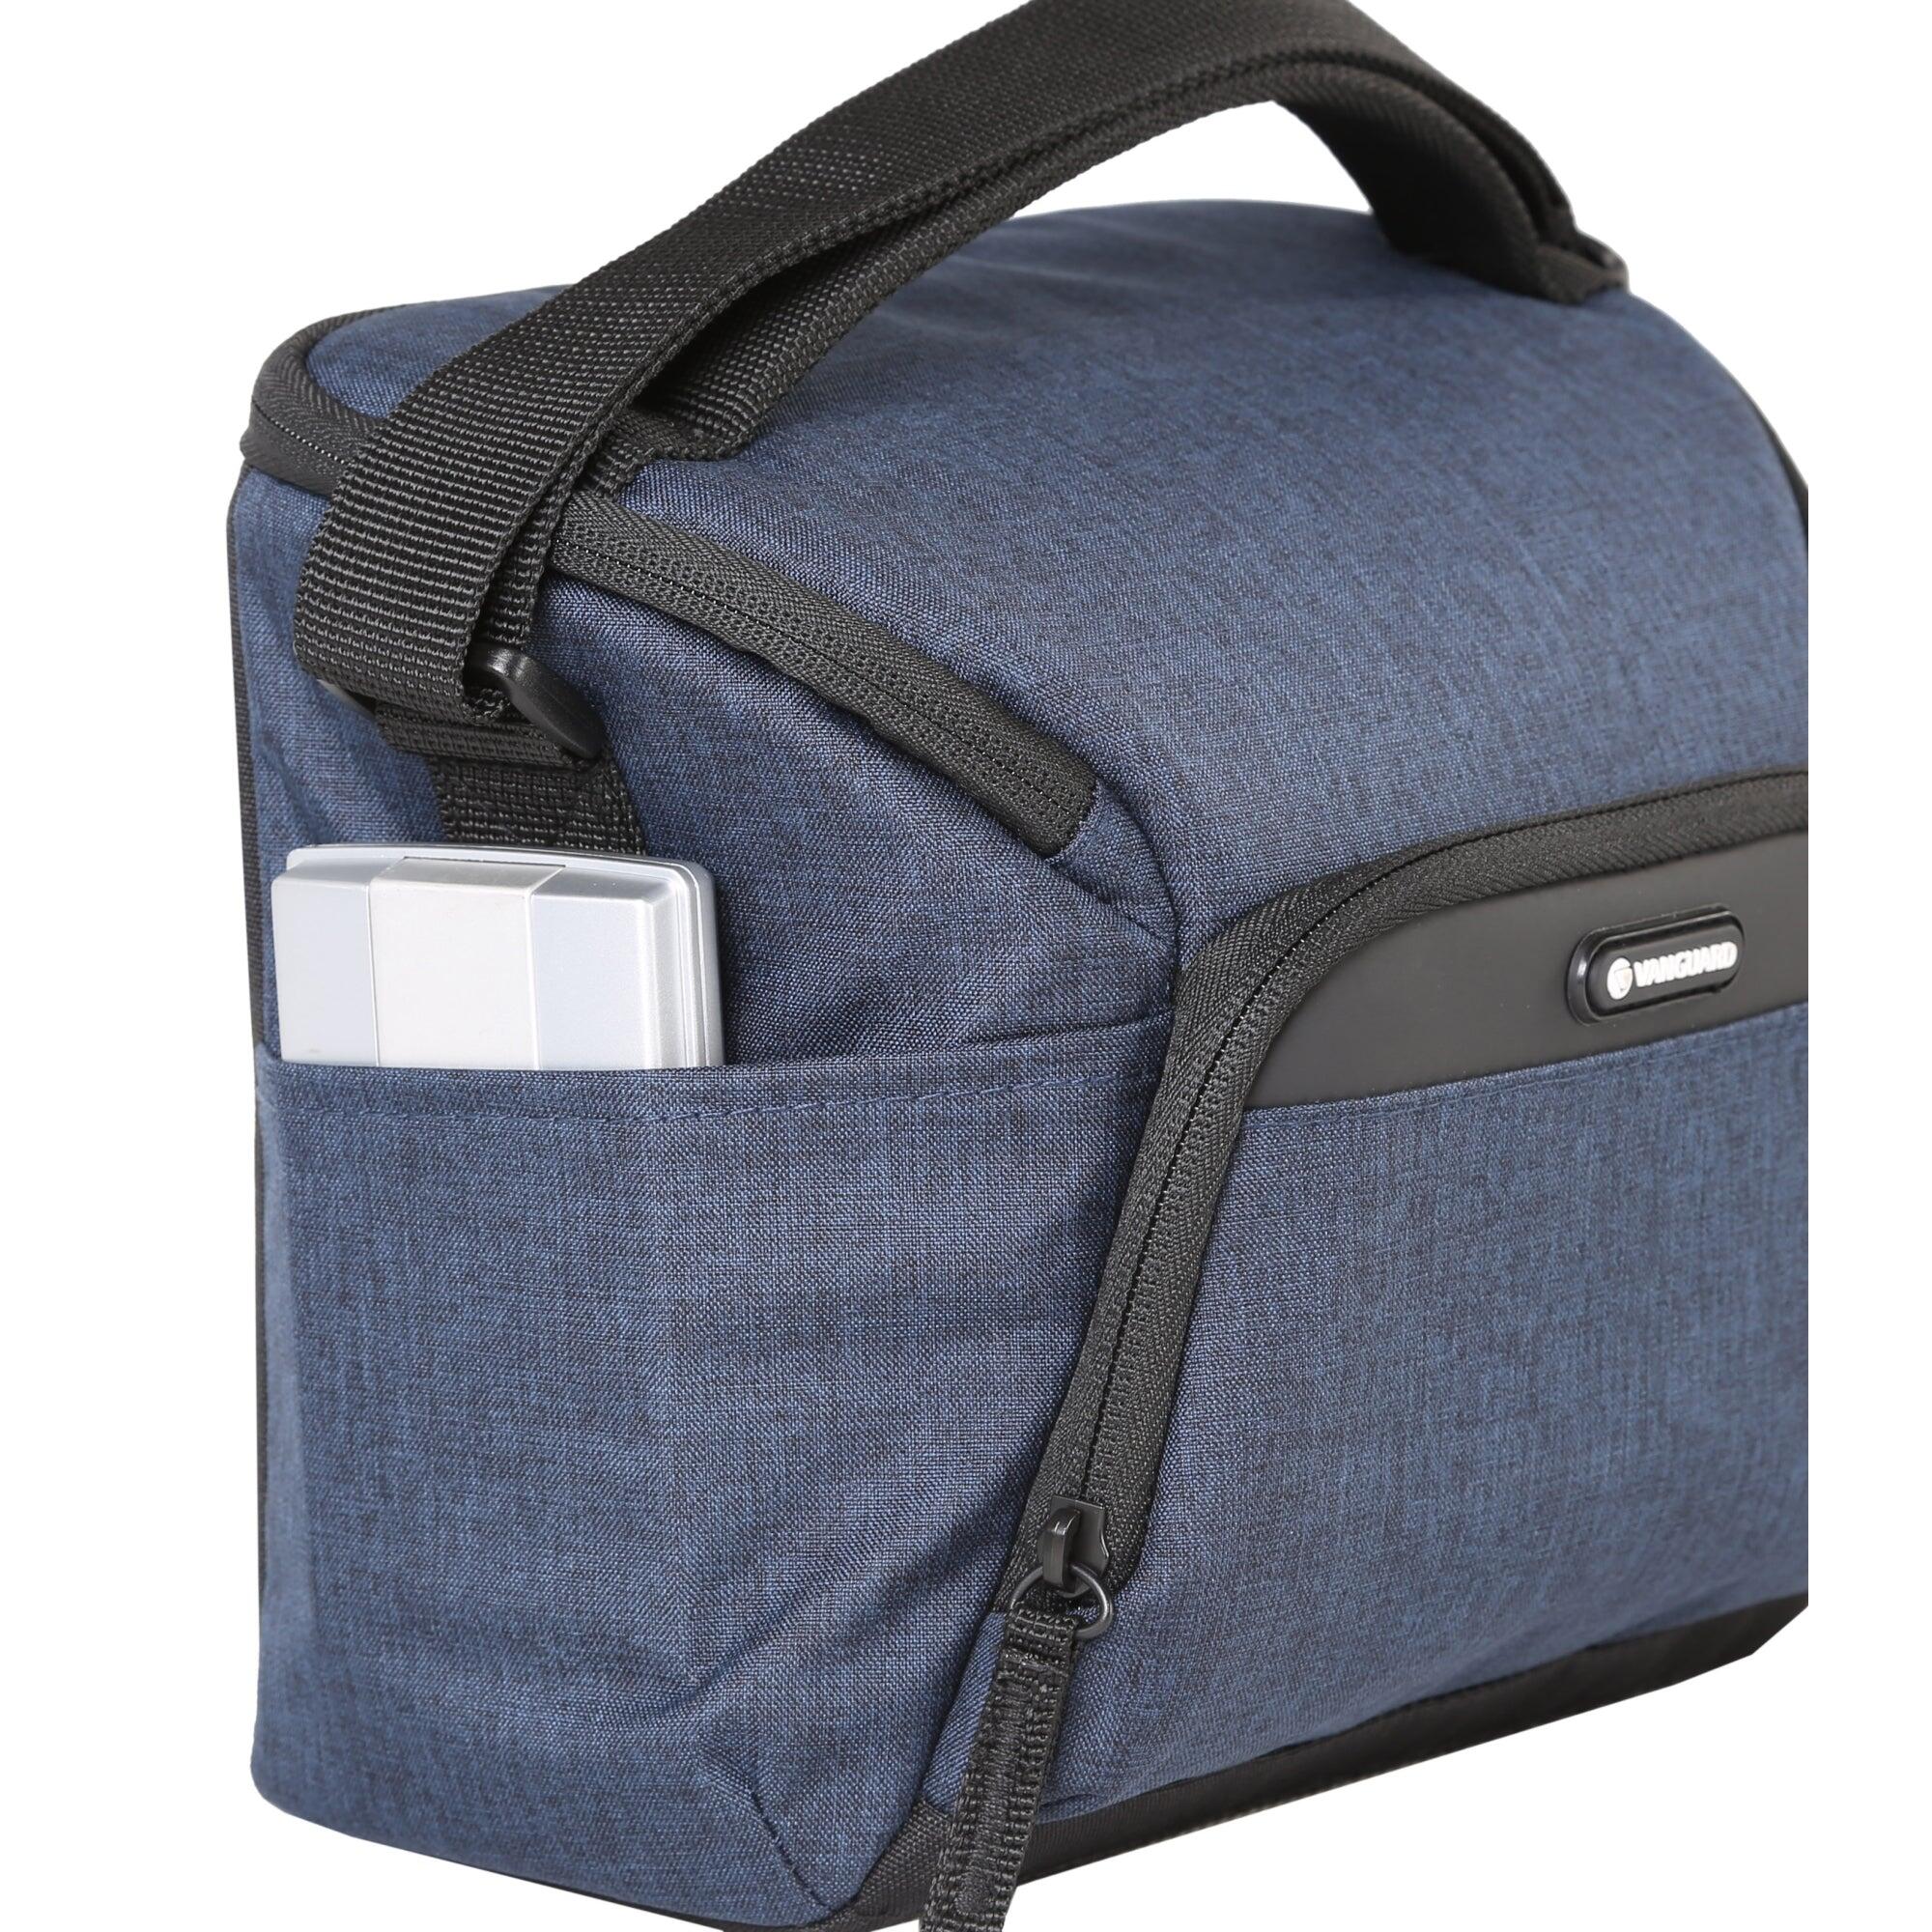 VESTA Aspire 21 NV Shoulder Bag - Blue 5/5